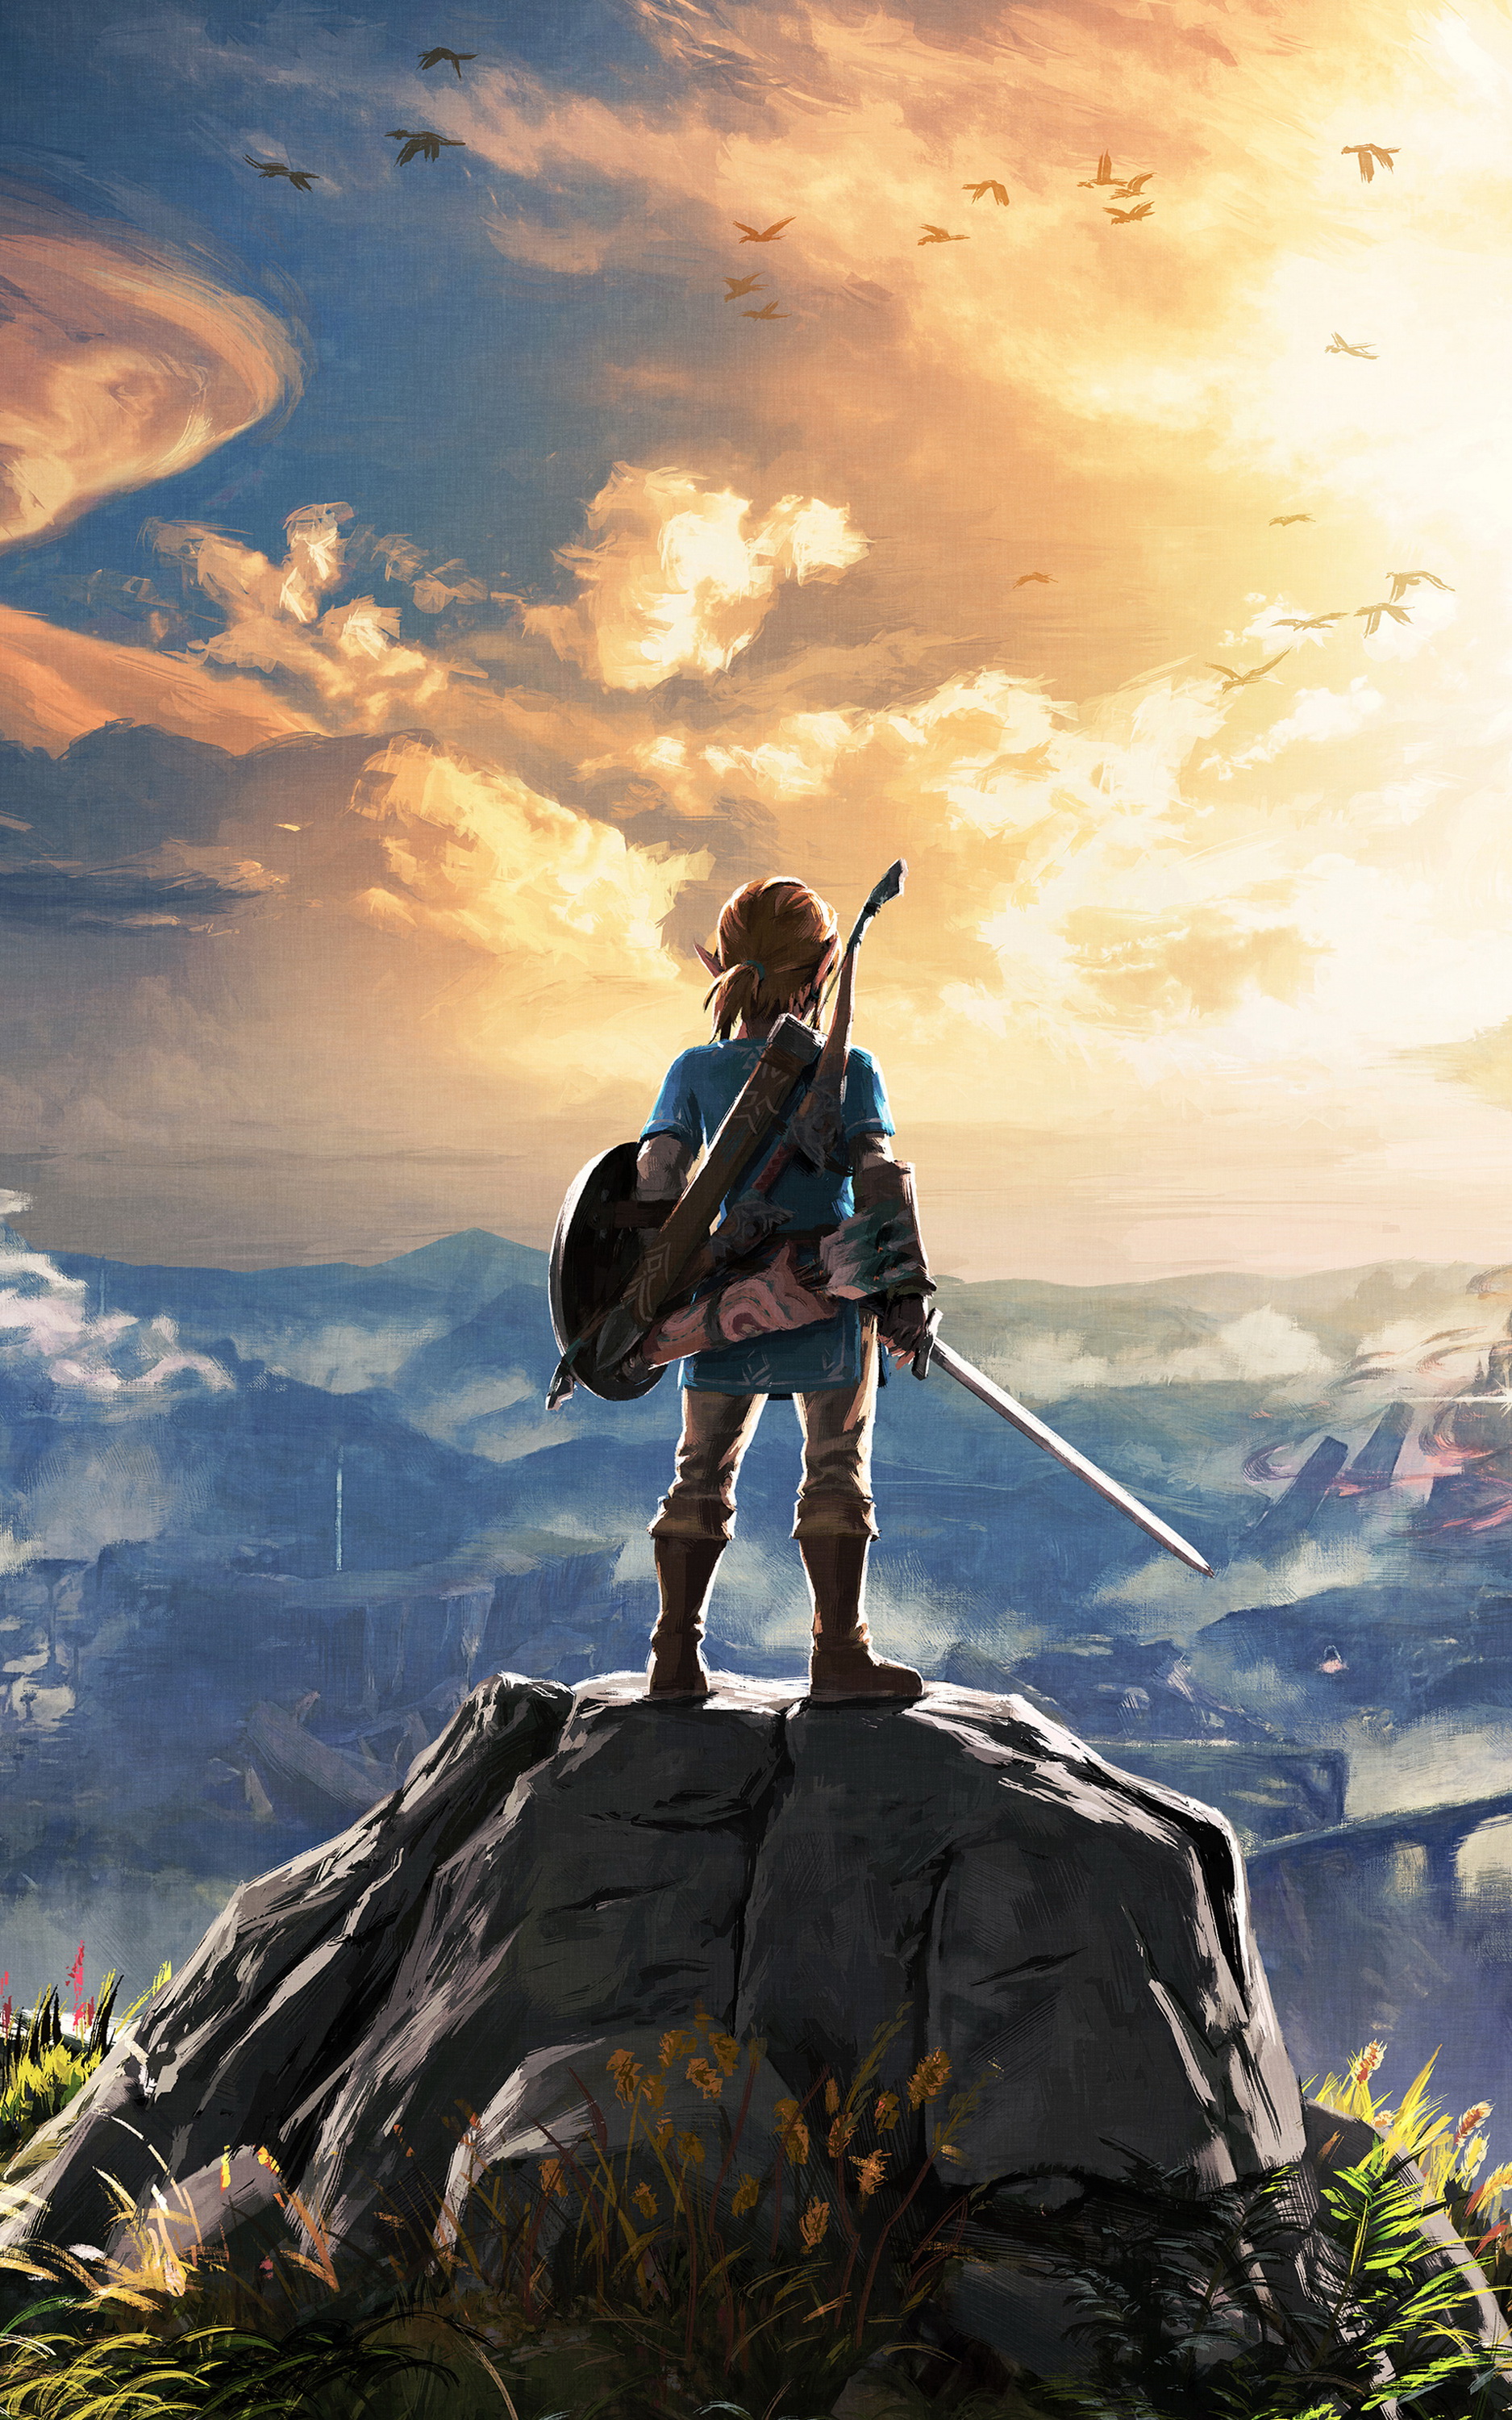 Thế giới Zelda đầy màu sắc và huyền bí. Tải miễn phí hình nền di động Legend of Zelda, để được chiêm ngưỡng những hình ảnh đẹp nhất từ trò chơi tuyệt đỉnh này, khiến bạn không thể rời mắt khỏi màn hình điện thoại.